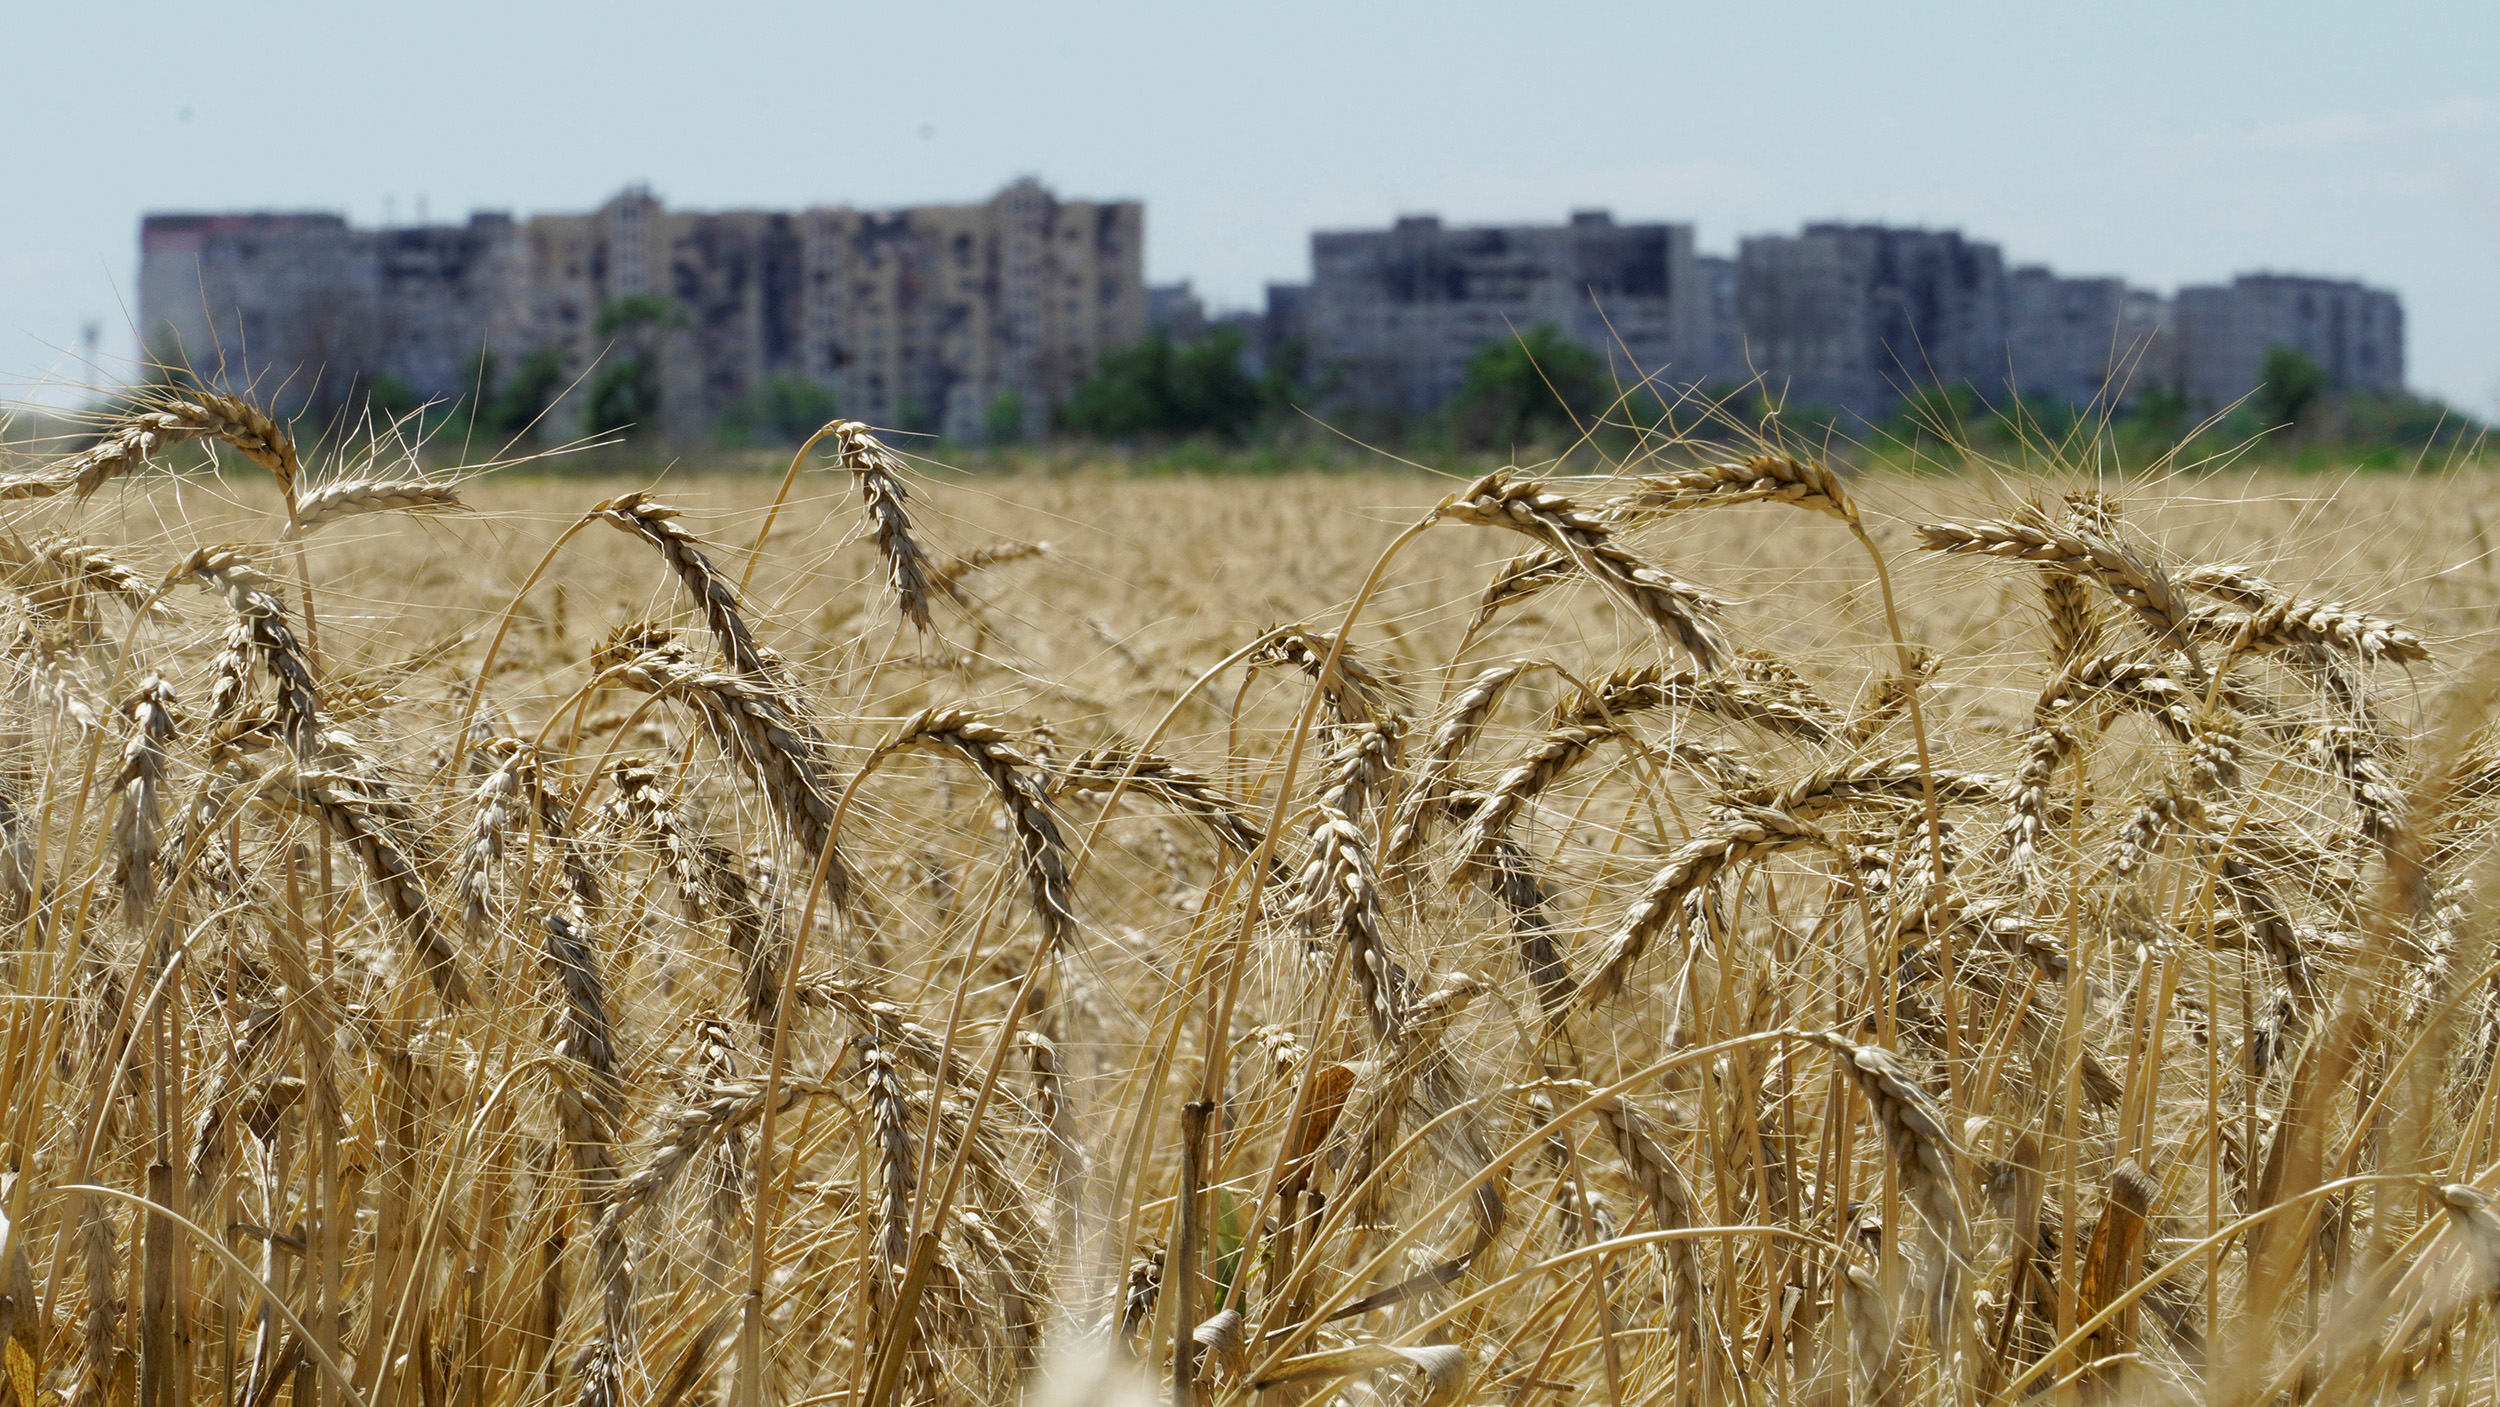 A wheat field near Mariupol in the Donetsk region, Ukraine, on July 15.